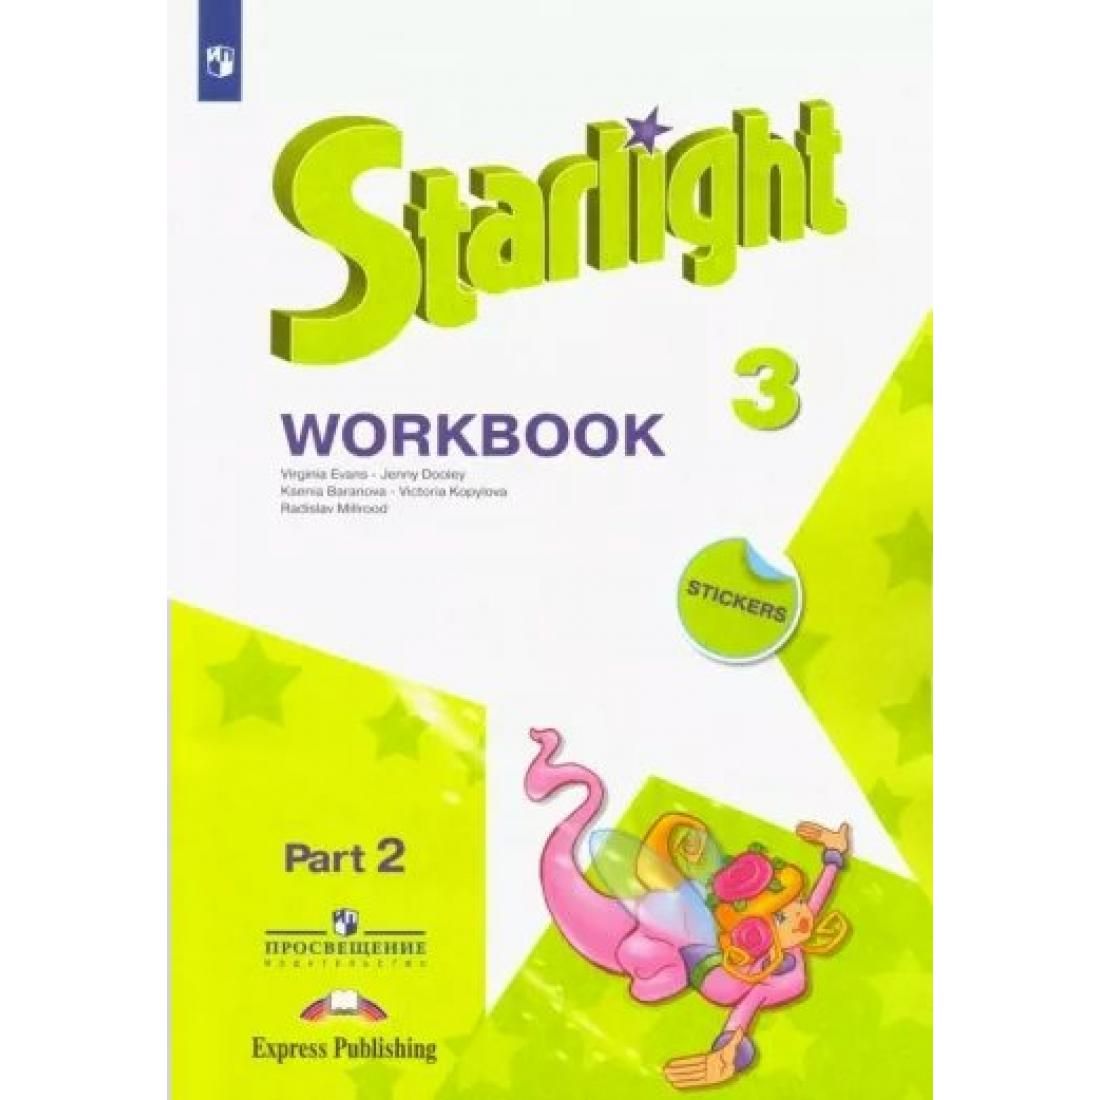 Английский язык 10 класс углубленный уровень starlight. Starlight 3 Workbook 2 часть. Workbook 3 класс Starlight 2 часть. Starlight 2 Workbook Part 2. Starlight Workbook 2 класс 2 часть.